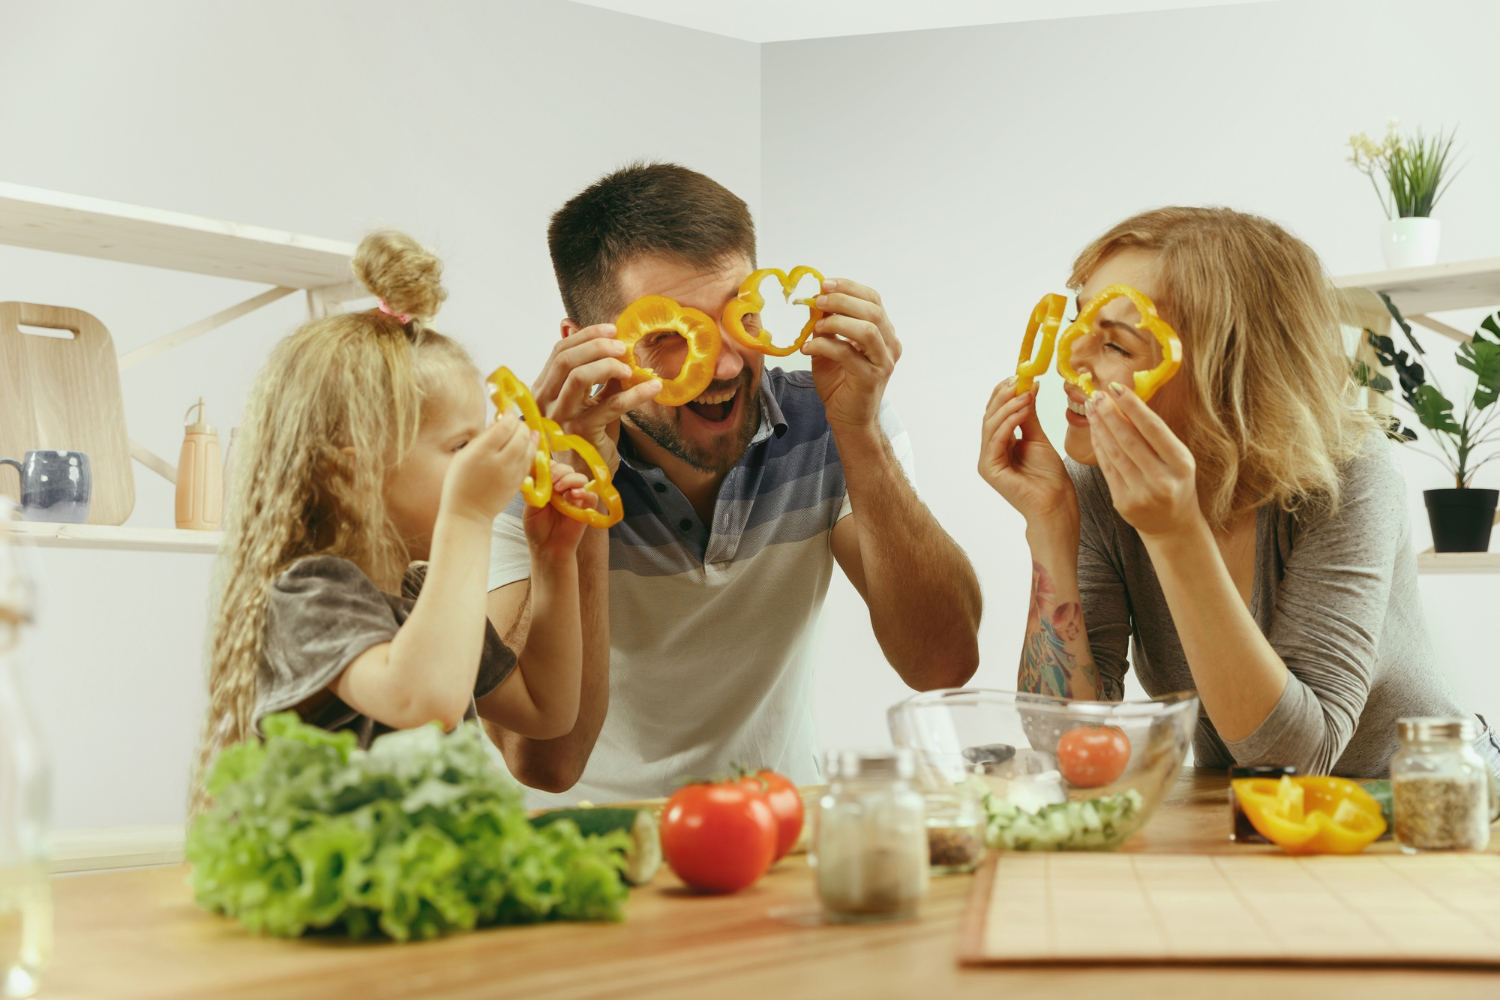 Bambini e alimentazione: 10 consigli utili